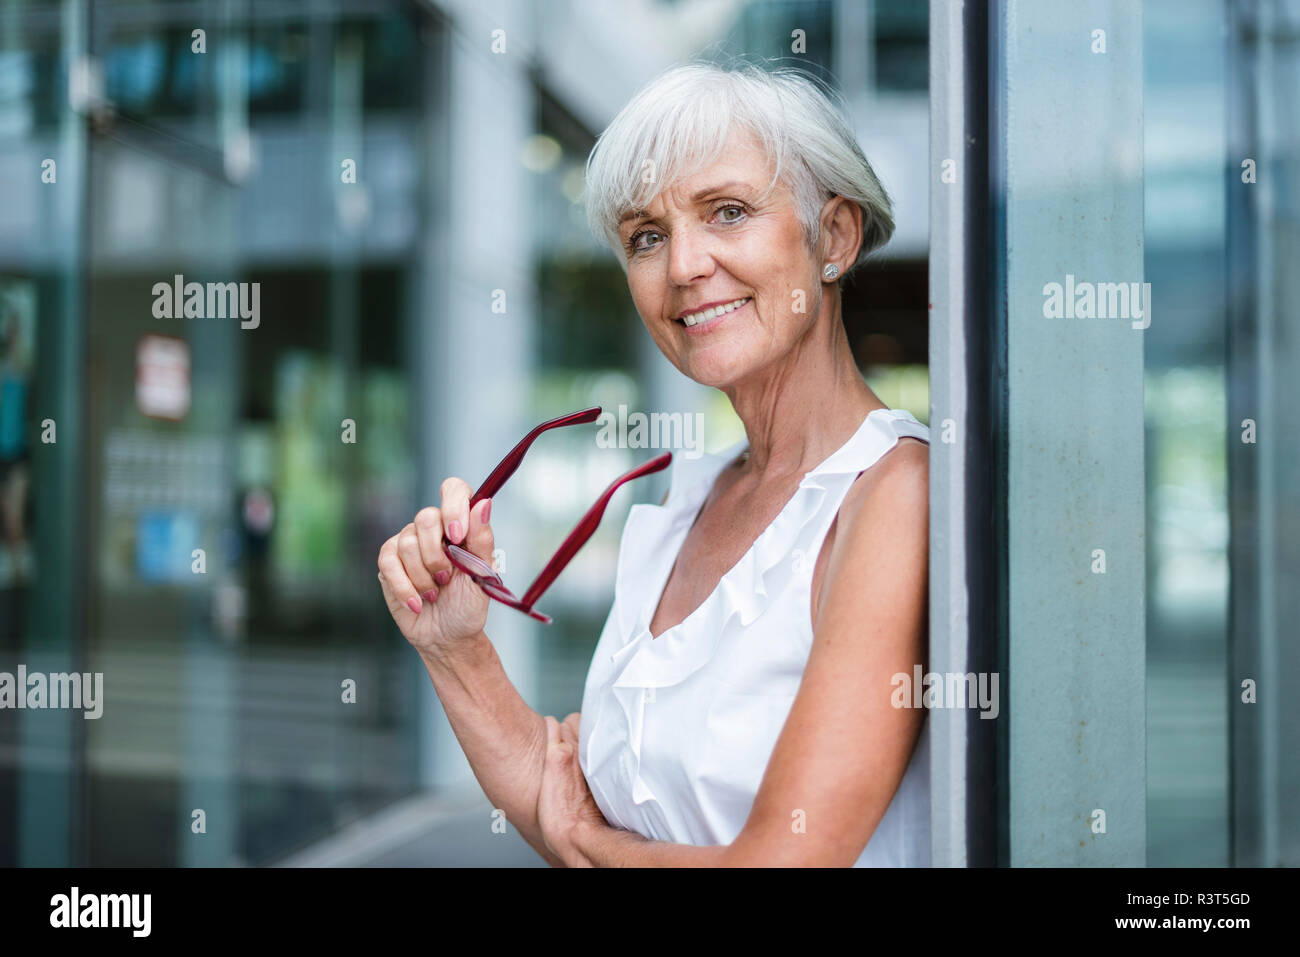 Portrait von lächelnden älteren Frau mit Brille Stockfoto